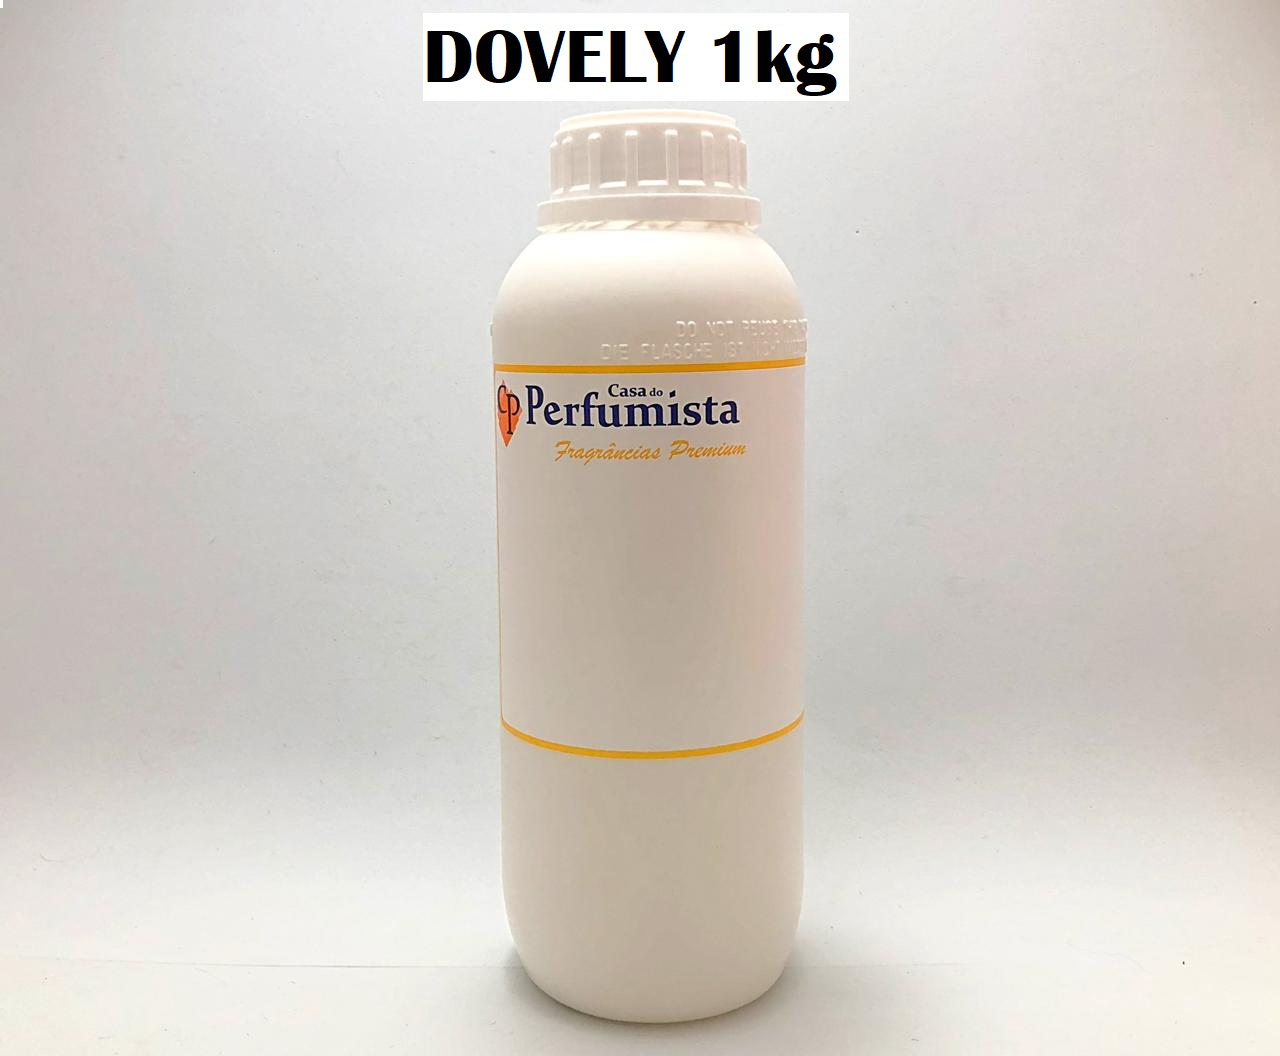 DOVELY - 1kg